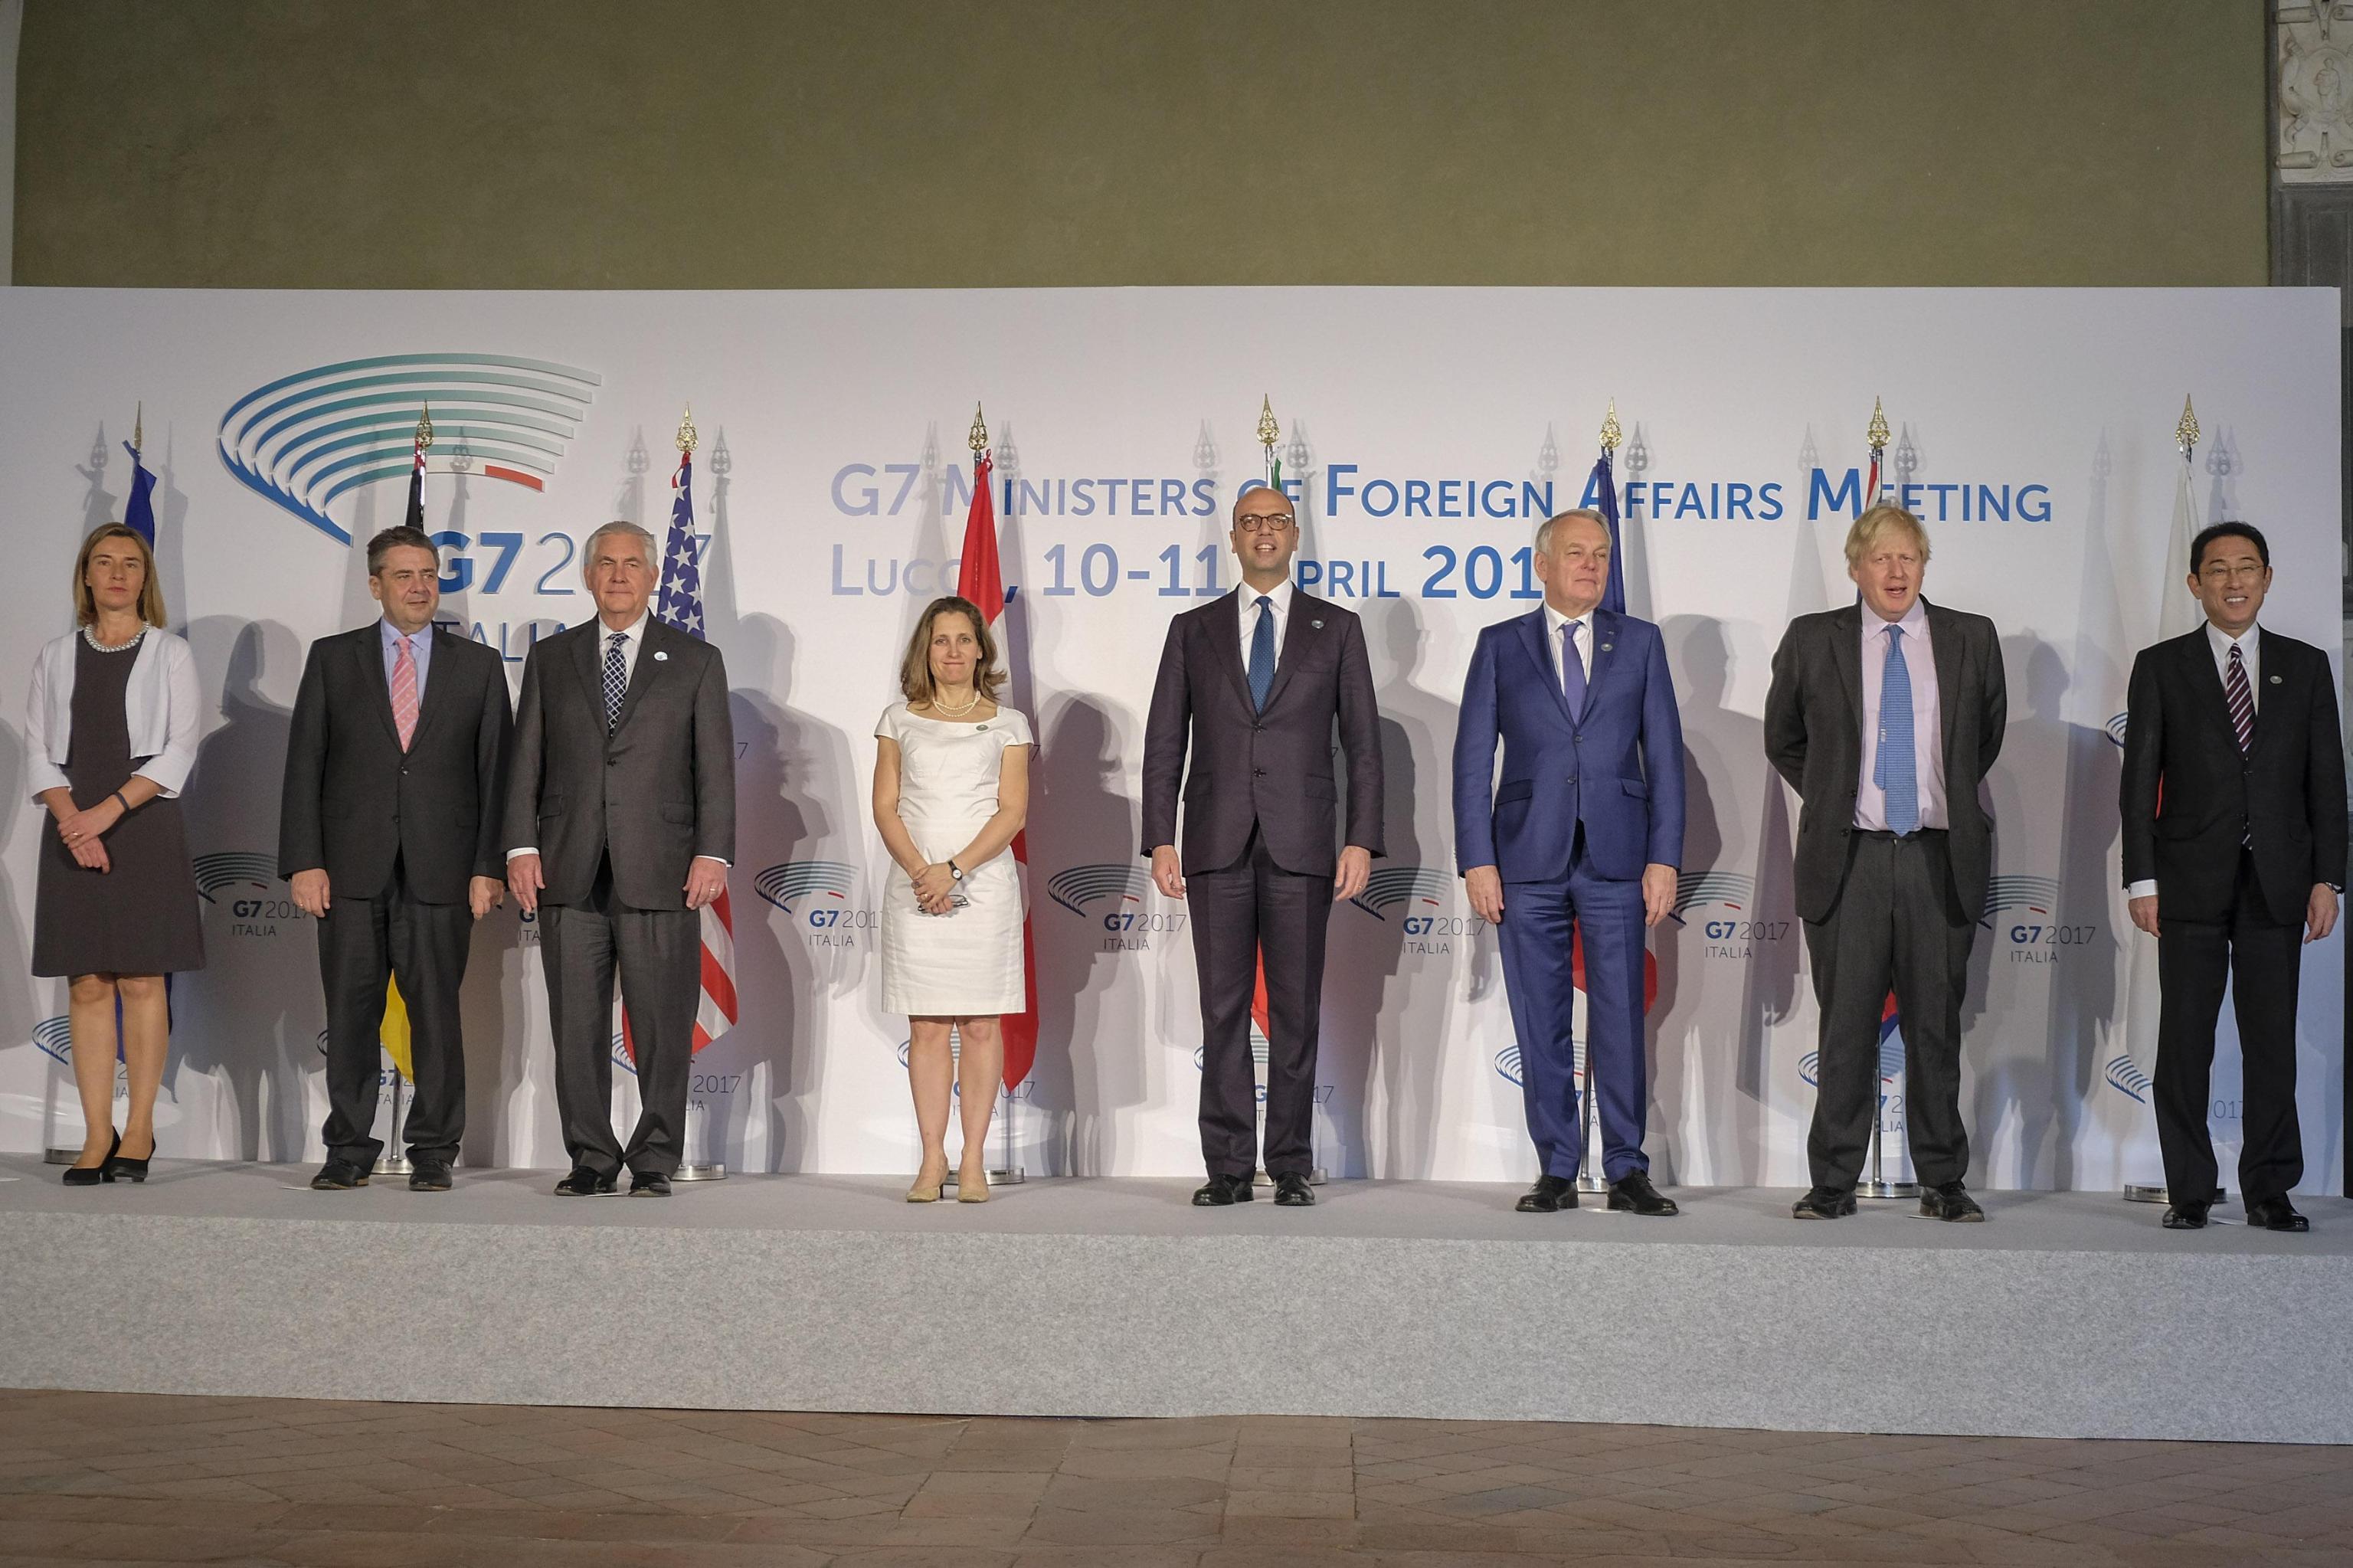 Външните министри от Г-7 и комисар Могерини от ЕС на срещата в Италия